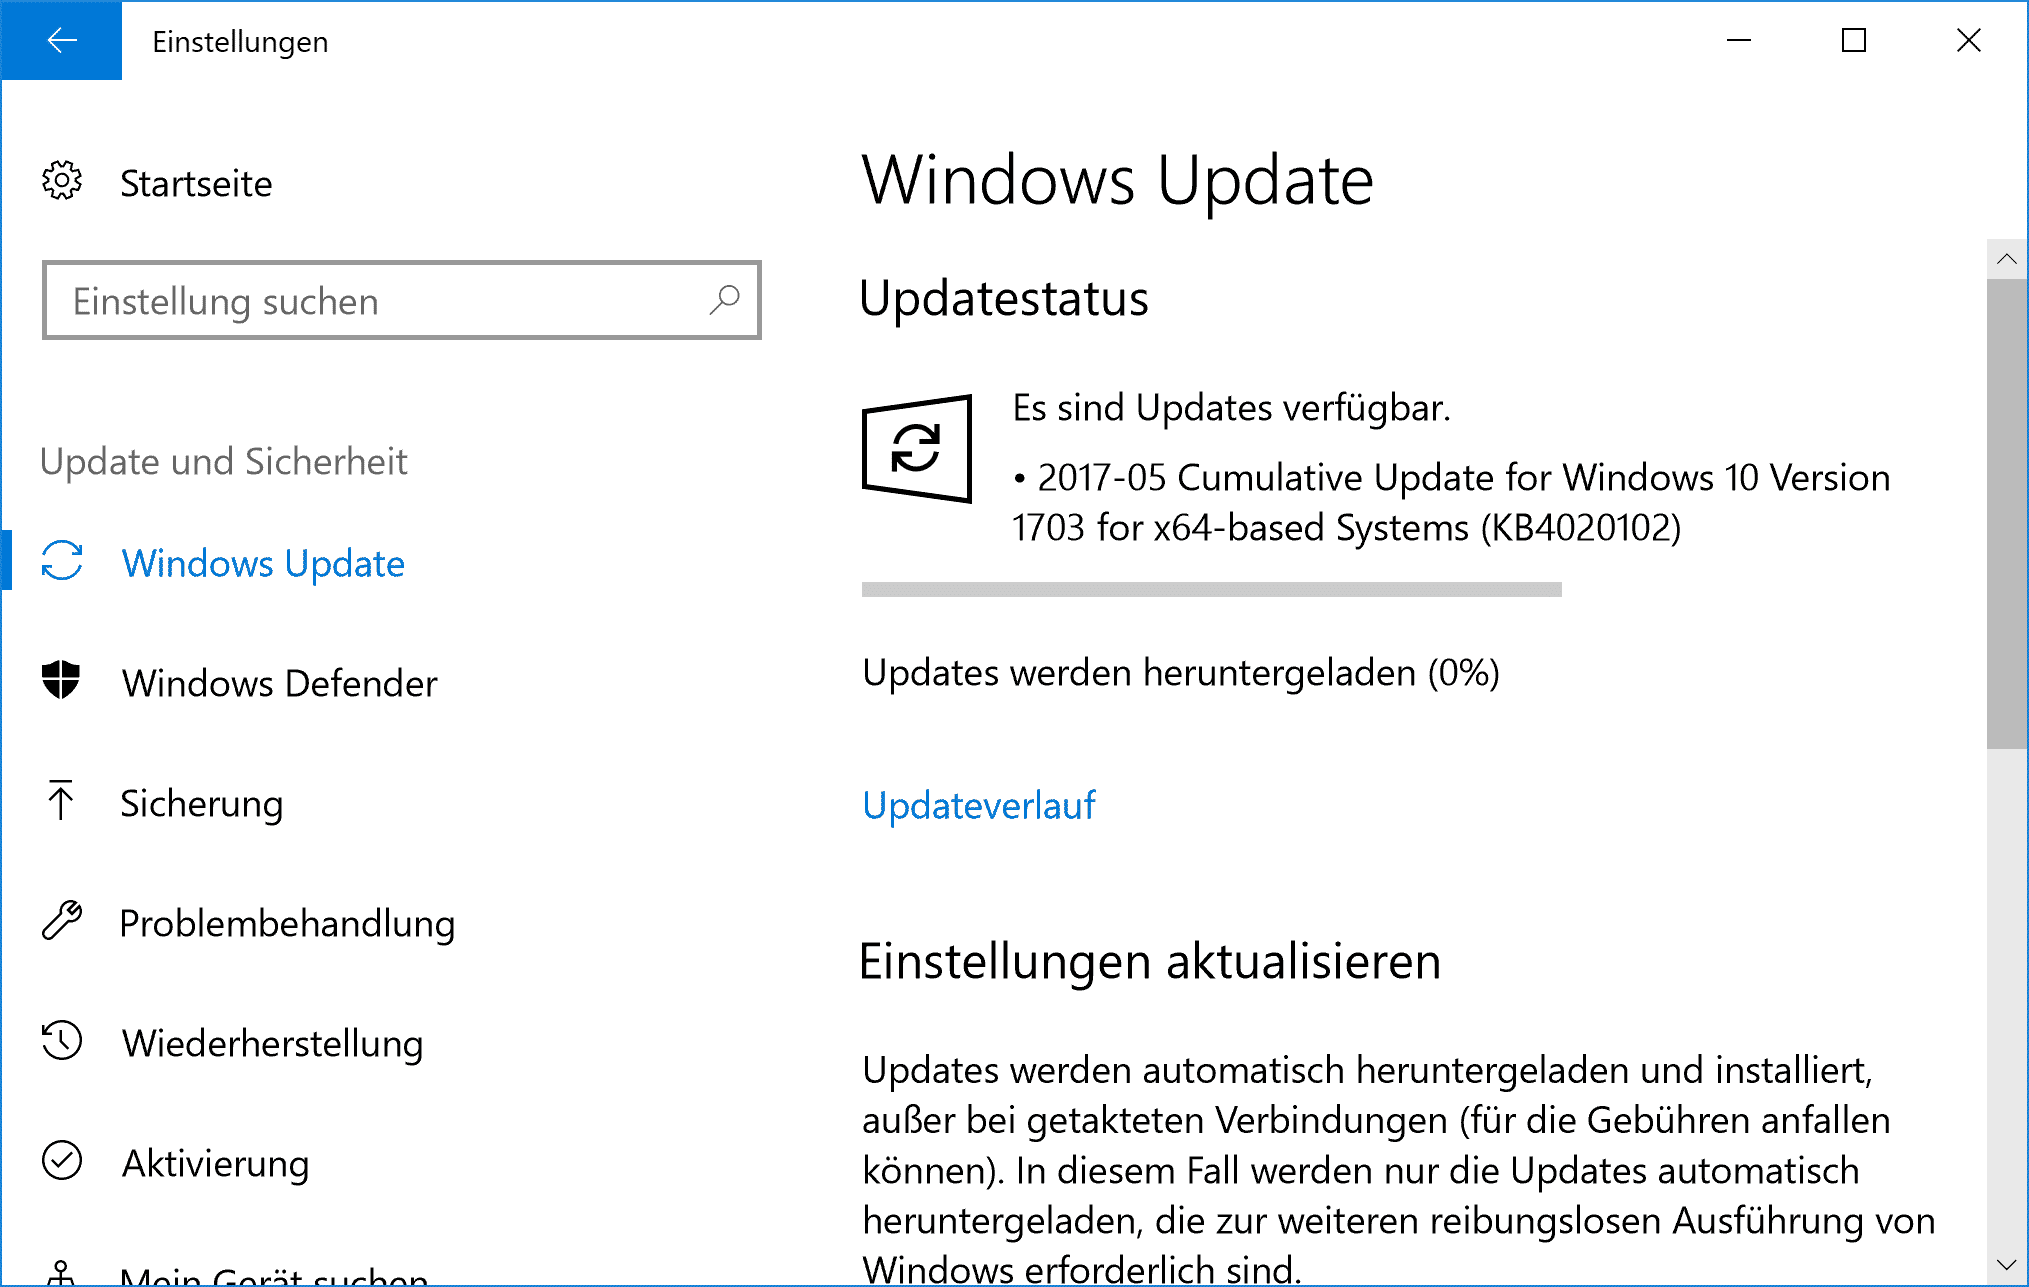 KB4020102 für Windows 10 Version 1703 Creators Update erschienen – Build 15063.332